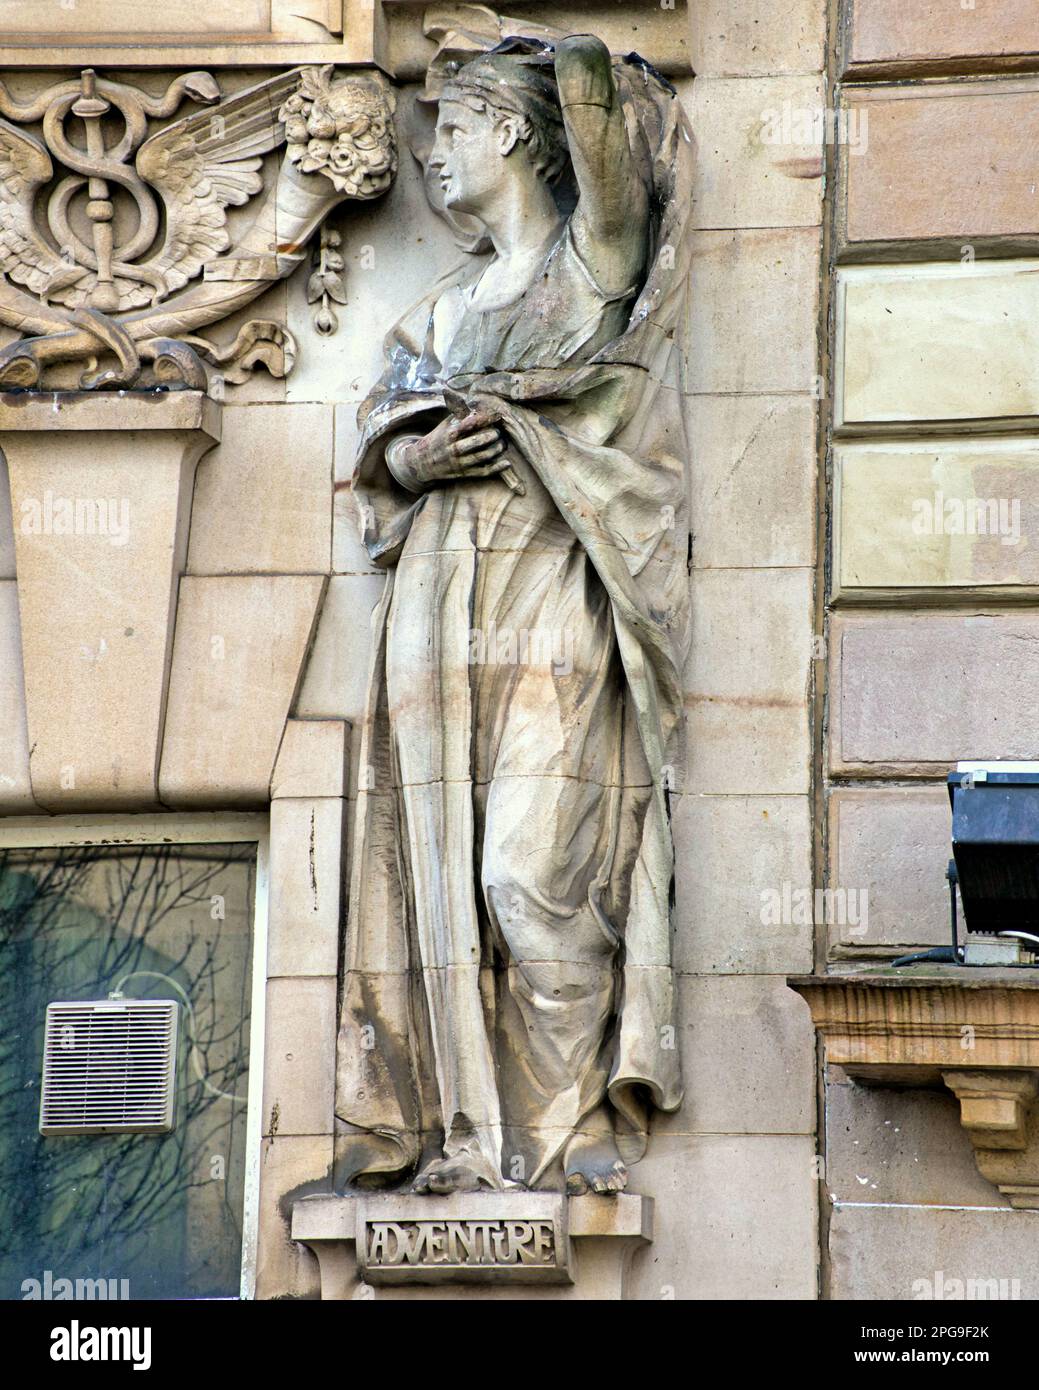 Eine von vier Skulpturen der Allegorien das Allegory des Abenteuers von Phyllis Archibald auf einem alten Bankgebäude am St. enoch Square Glasgow, Großbritannien Stockfoto